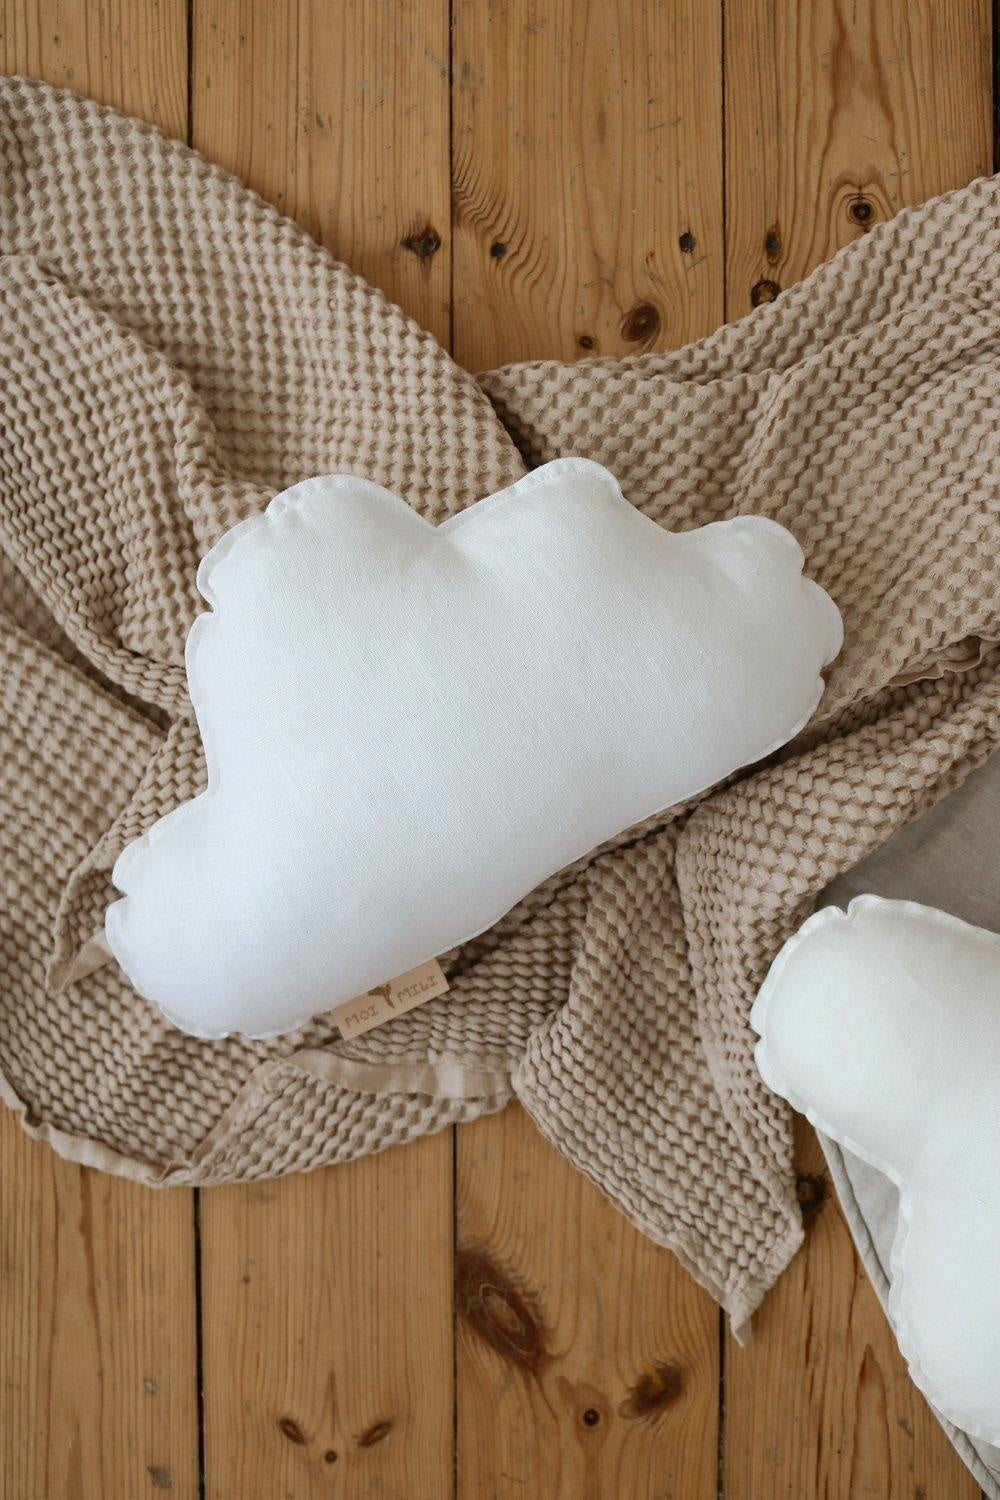 “White” Linen Cloud Pillow